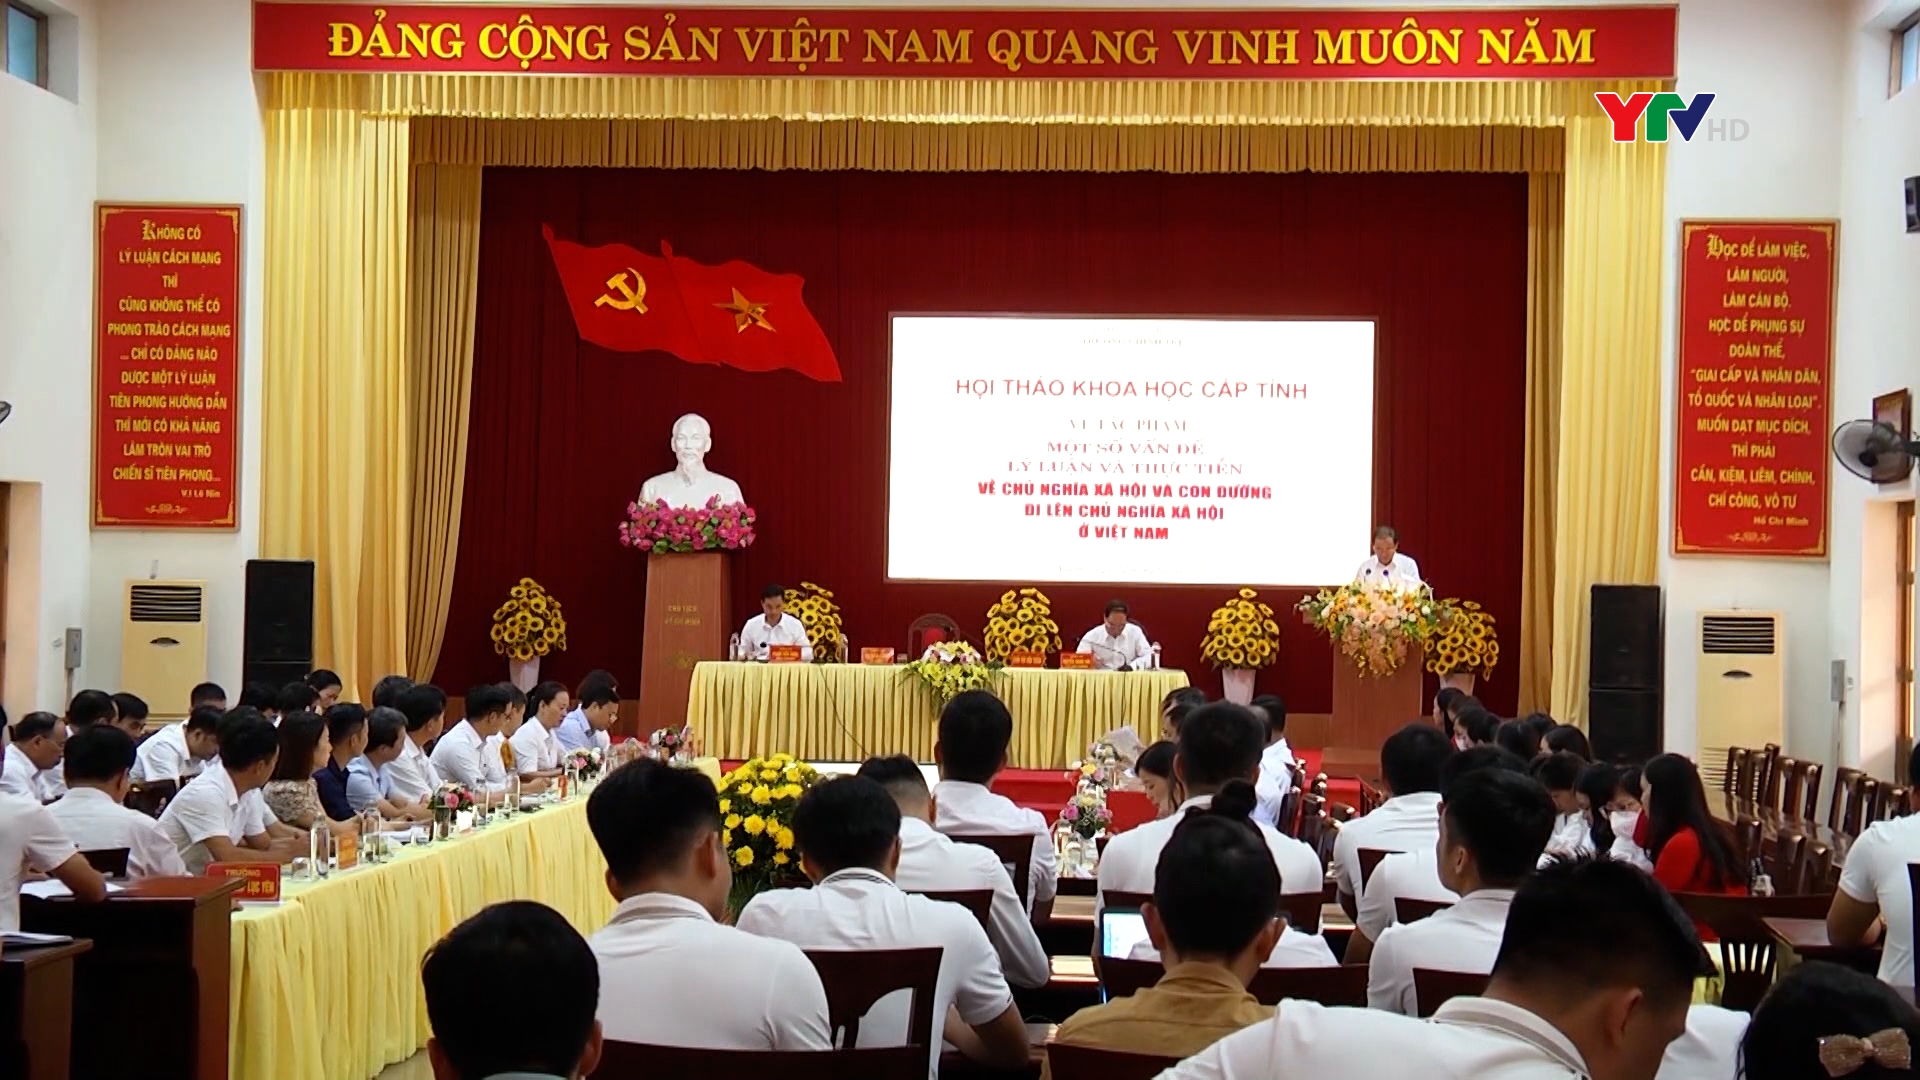 Hội thảo về tác phẩm “Một số vấn đề lý luận và thực tiễn về CNXH và con đường đi lên CNXH ở Việt Nam” của Tổng Bí thư Nguyễn Phú Trọng